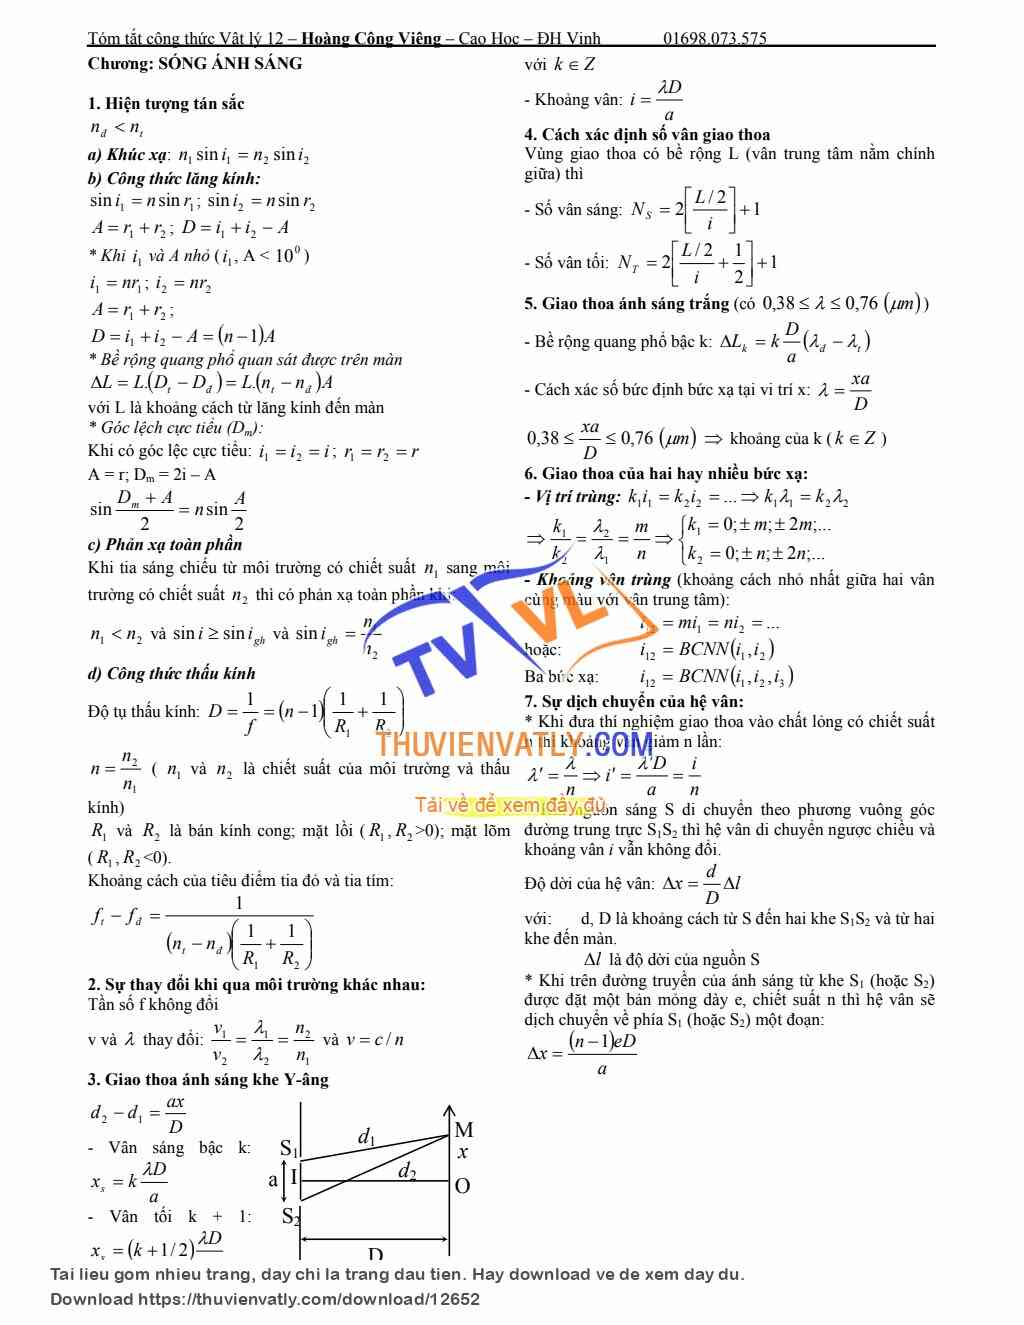 Tóm công thức vật lý 12 - p2